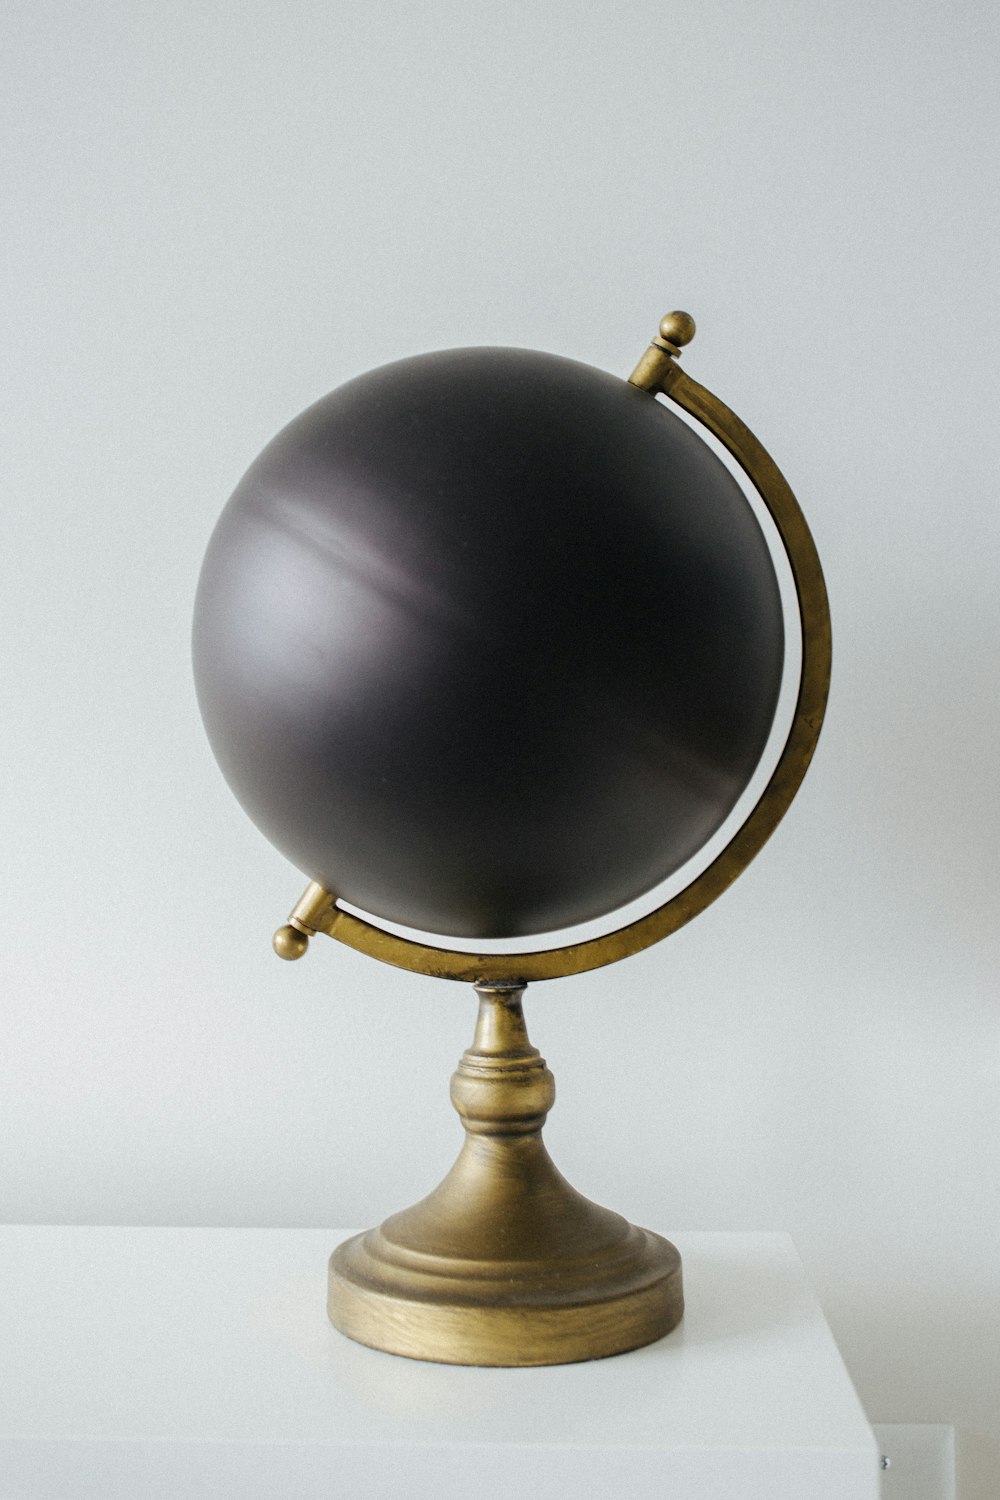 Ein schwarzer Globus, der auf einem weißen Tisch sitzt